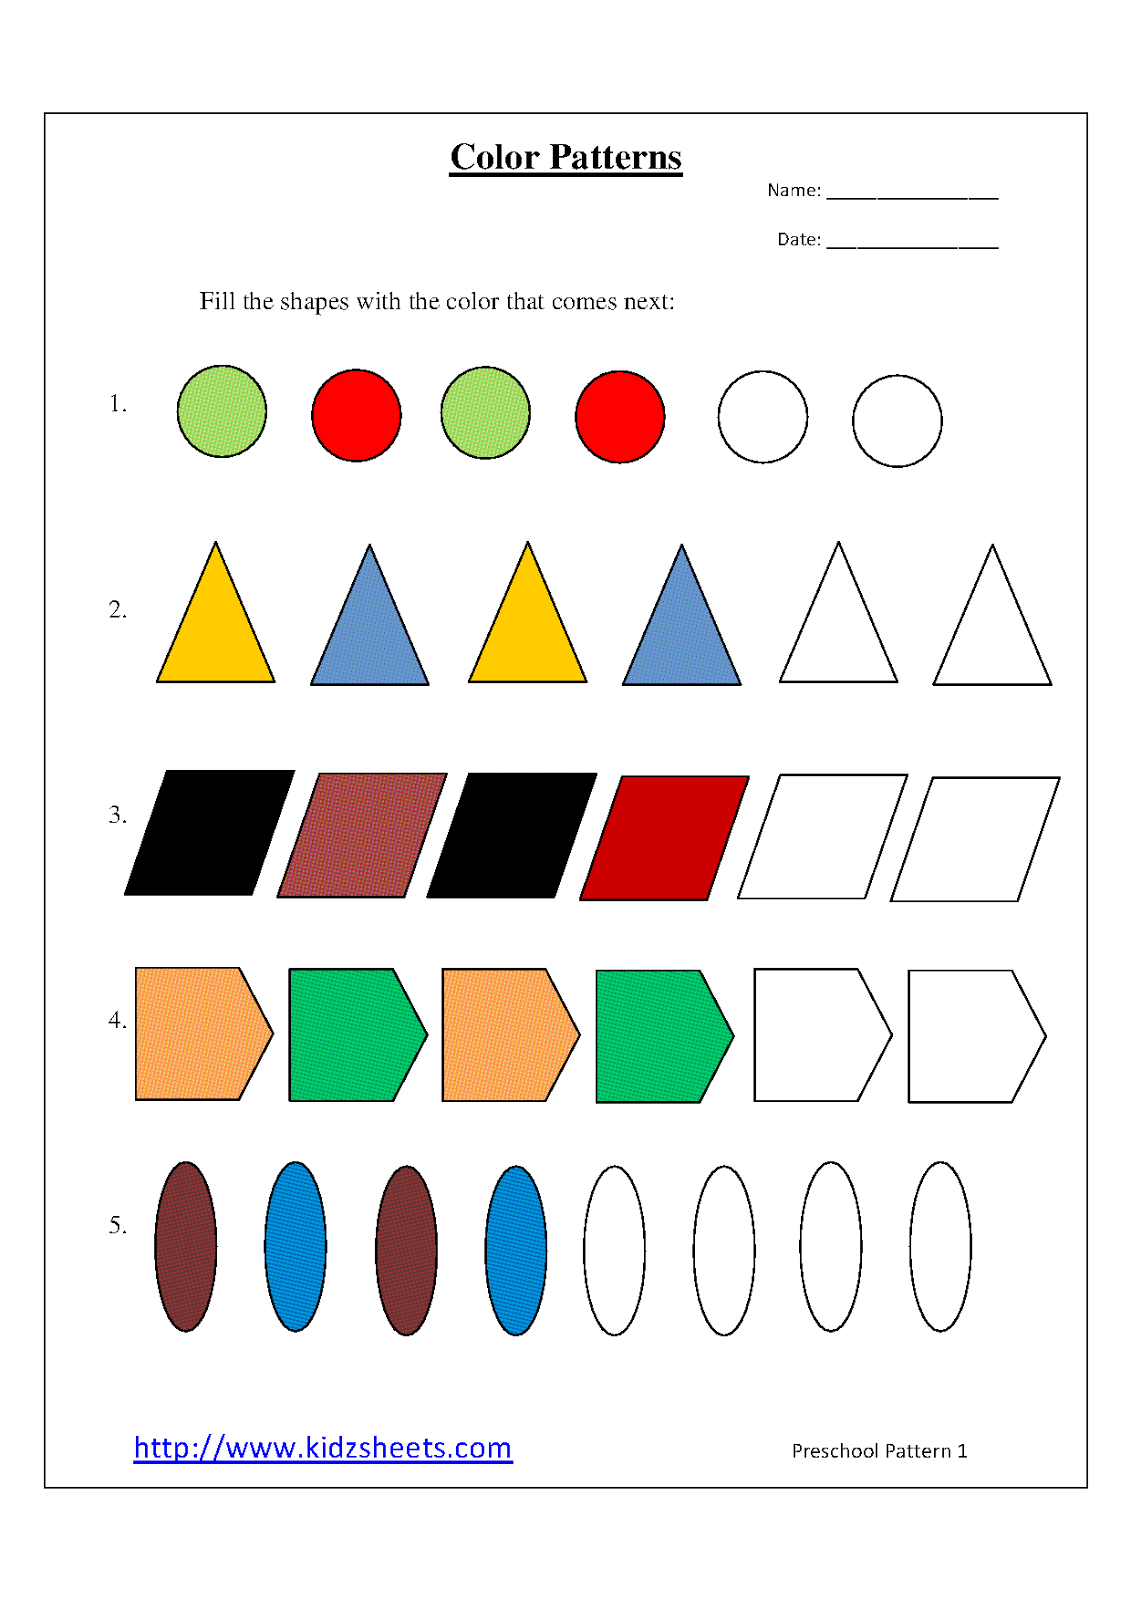 8-best-images-of-patterns-free-printable-preschool-worksheets-free